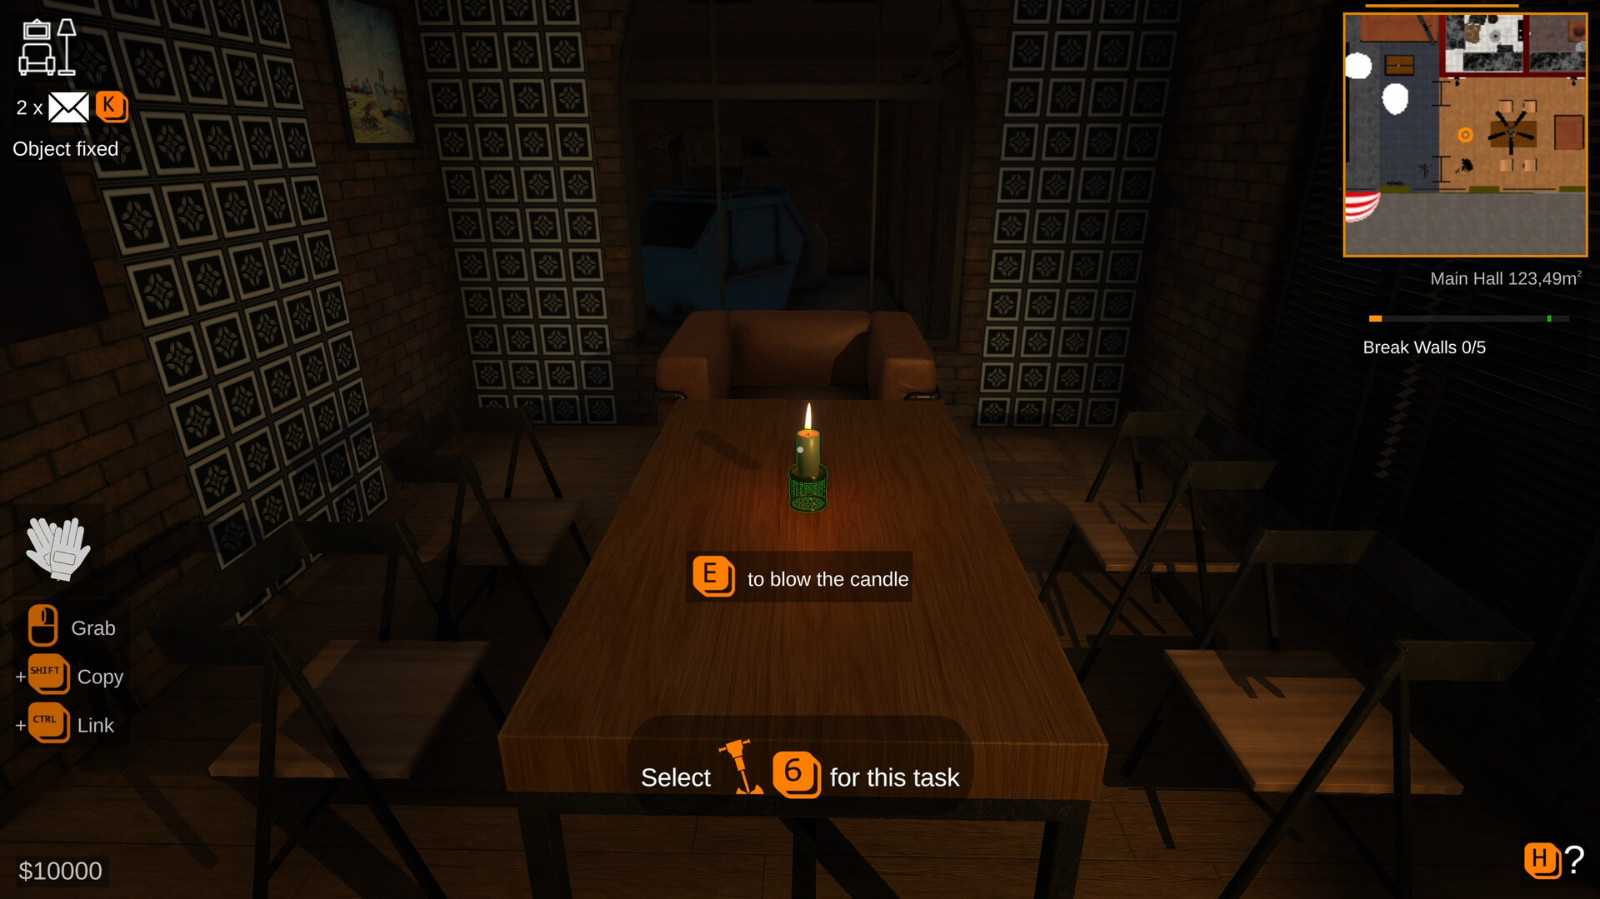 模拟建造游戏《餐馆建造者》Steam页面上线 支持简中